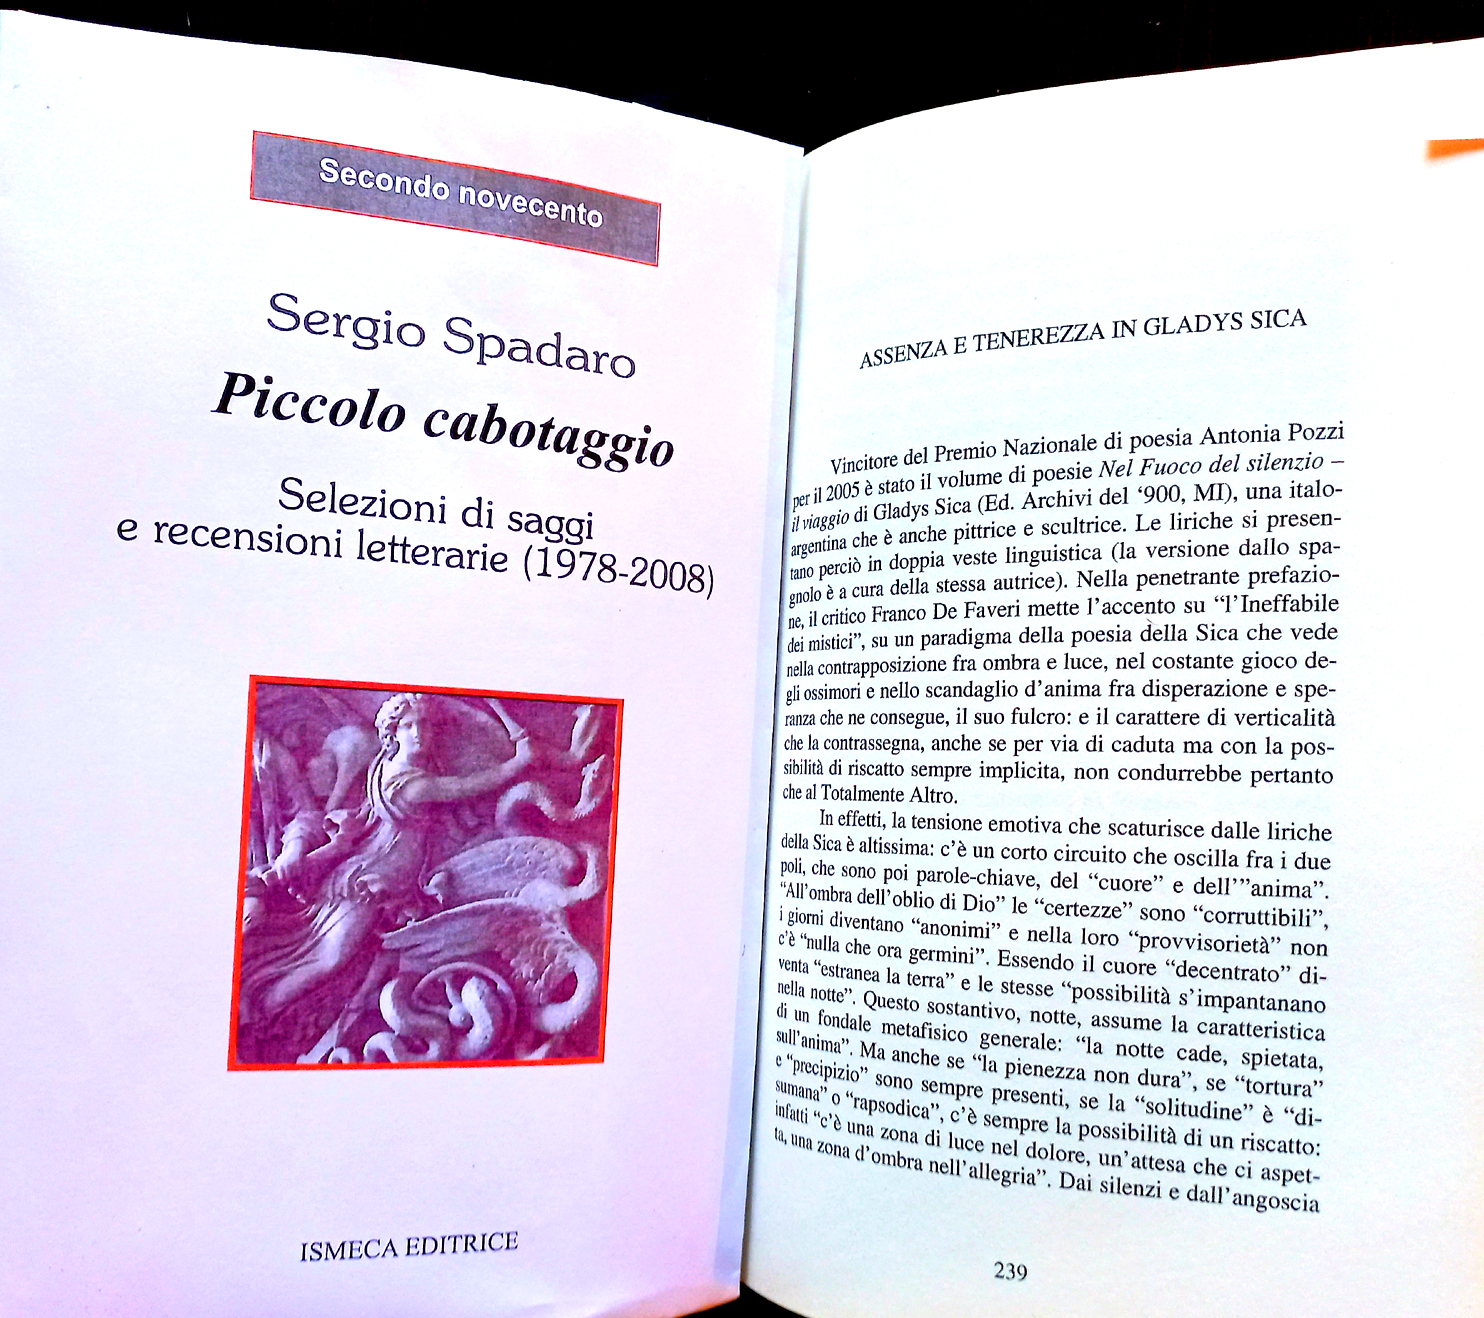 2010 - Recensione del libro 'Nel fuoco del silenzio-il Viaggio' di Gladys Sica, in 'Piccolo cabotaggio' di Sergio Spadaro,  a pag. 239